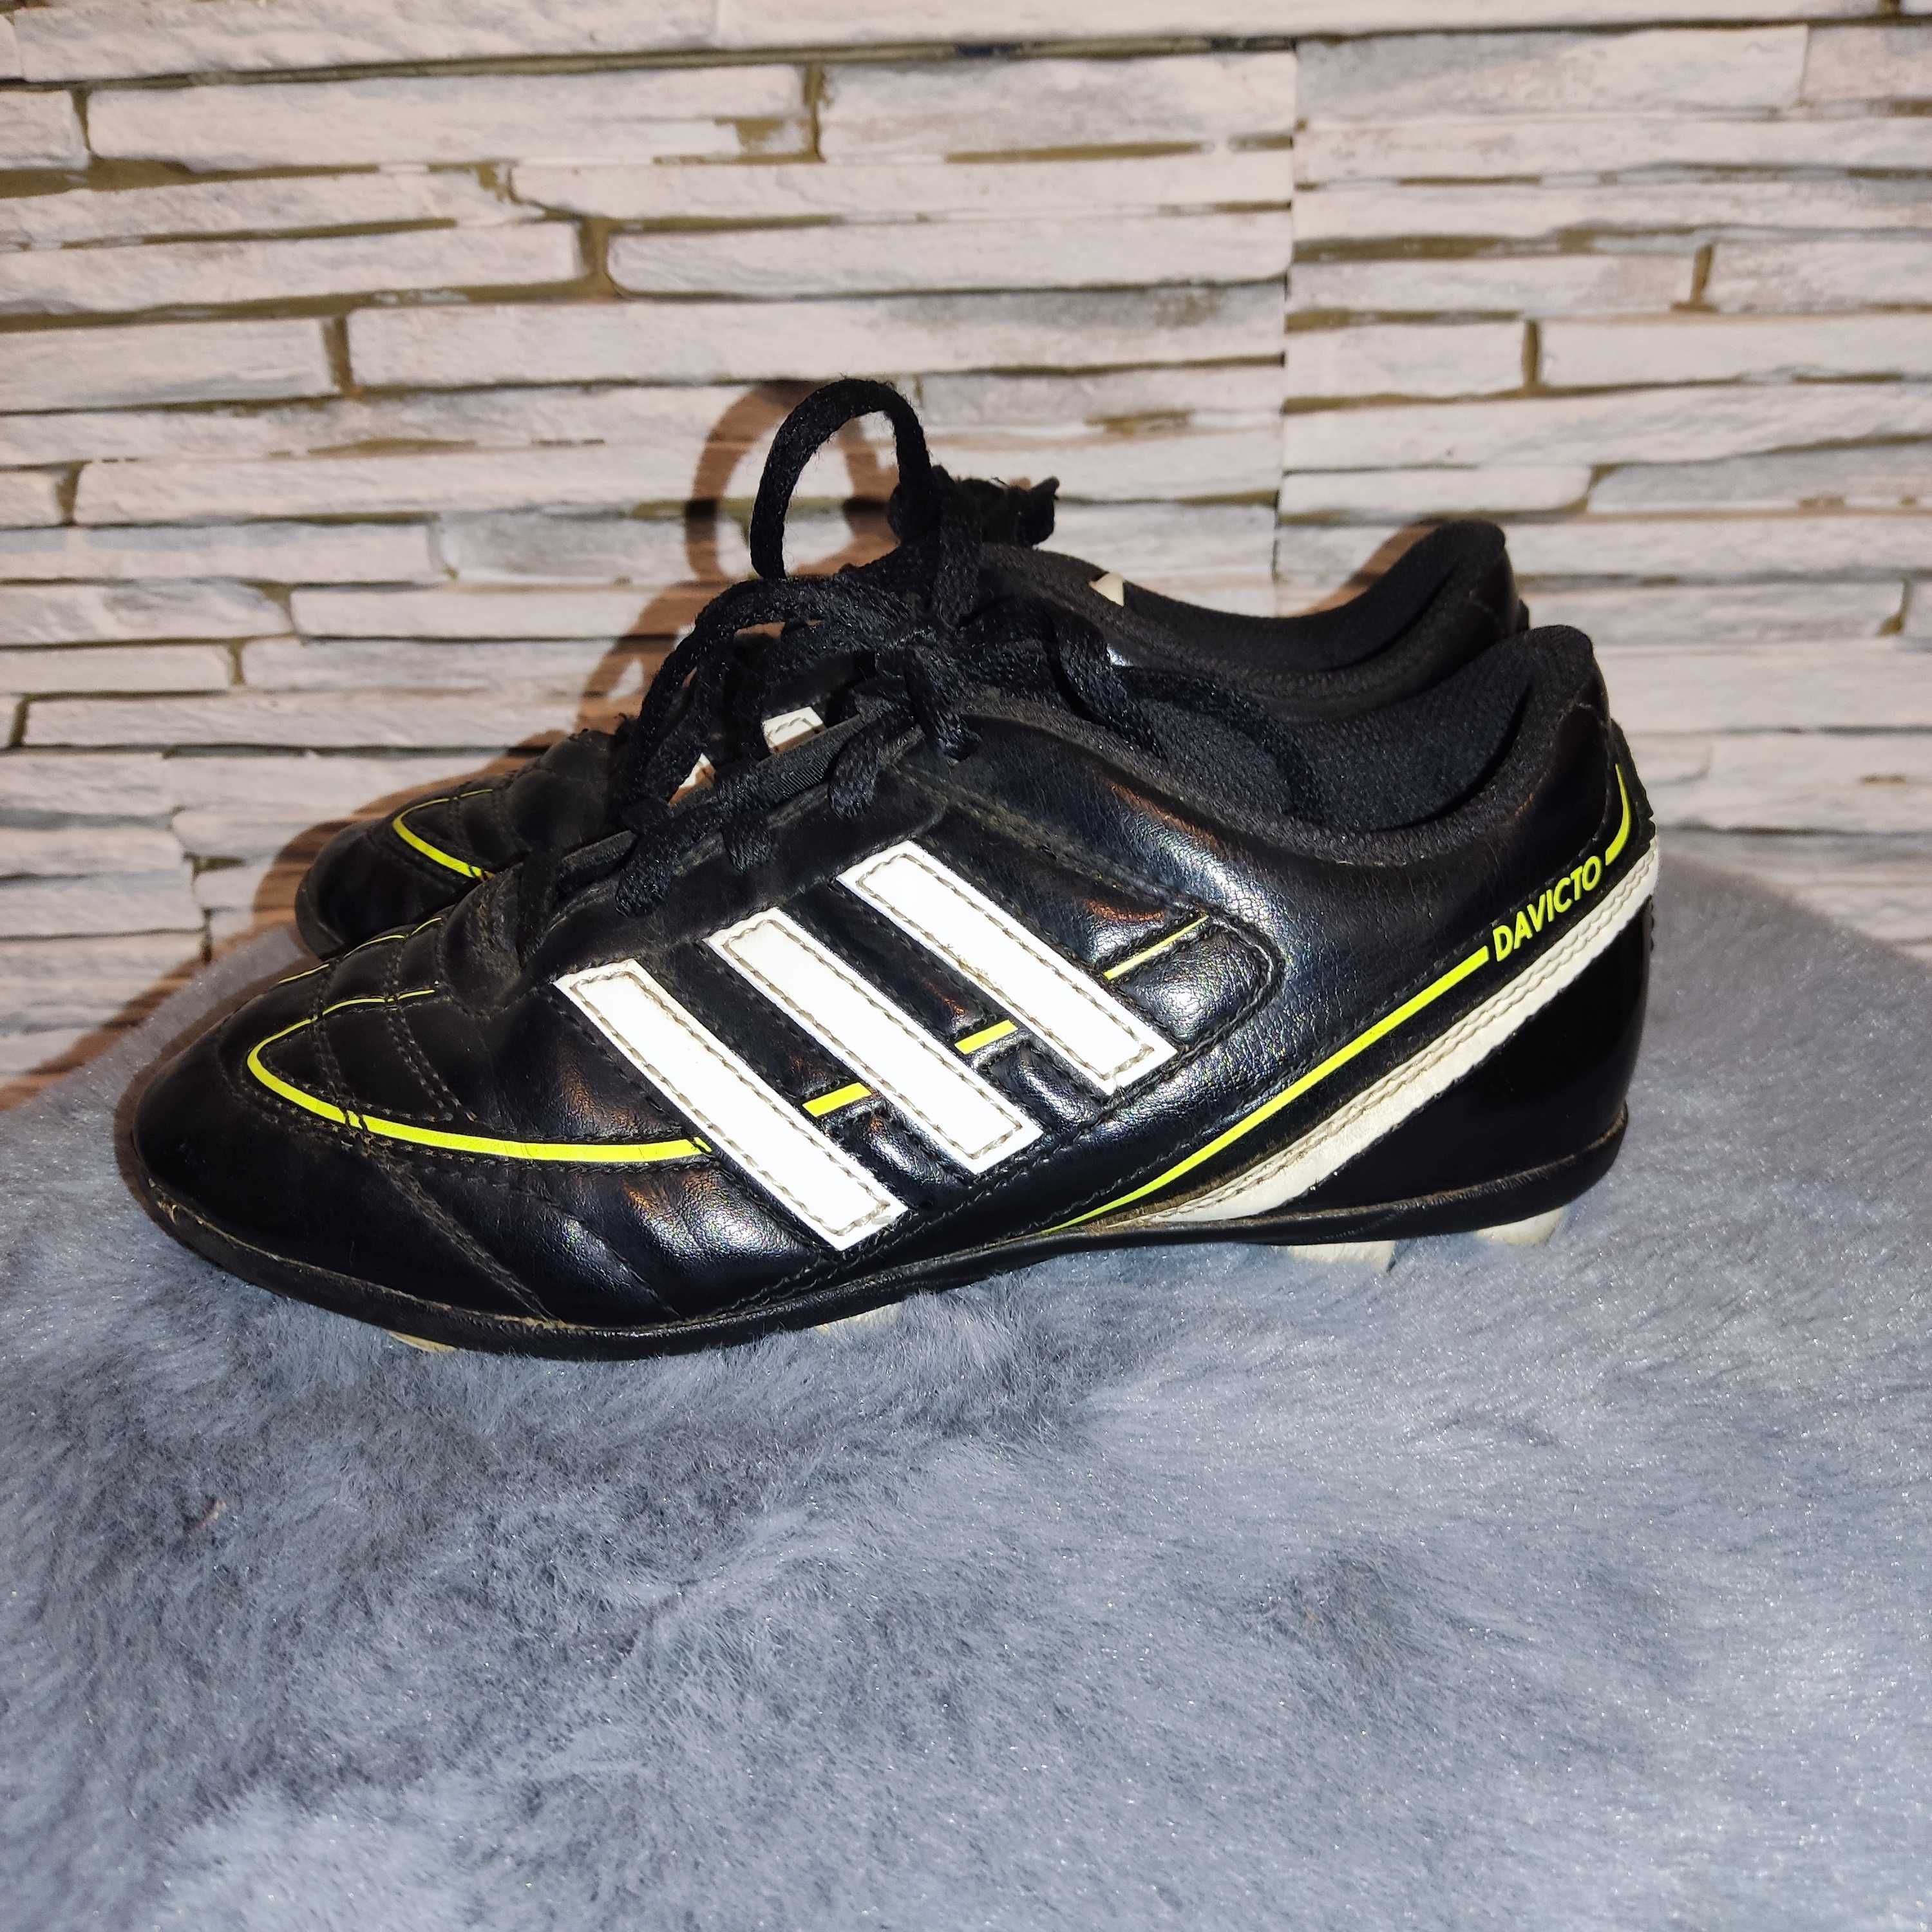 Adidas buty piłkarskie